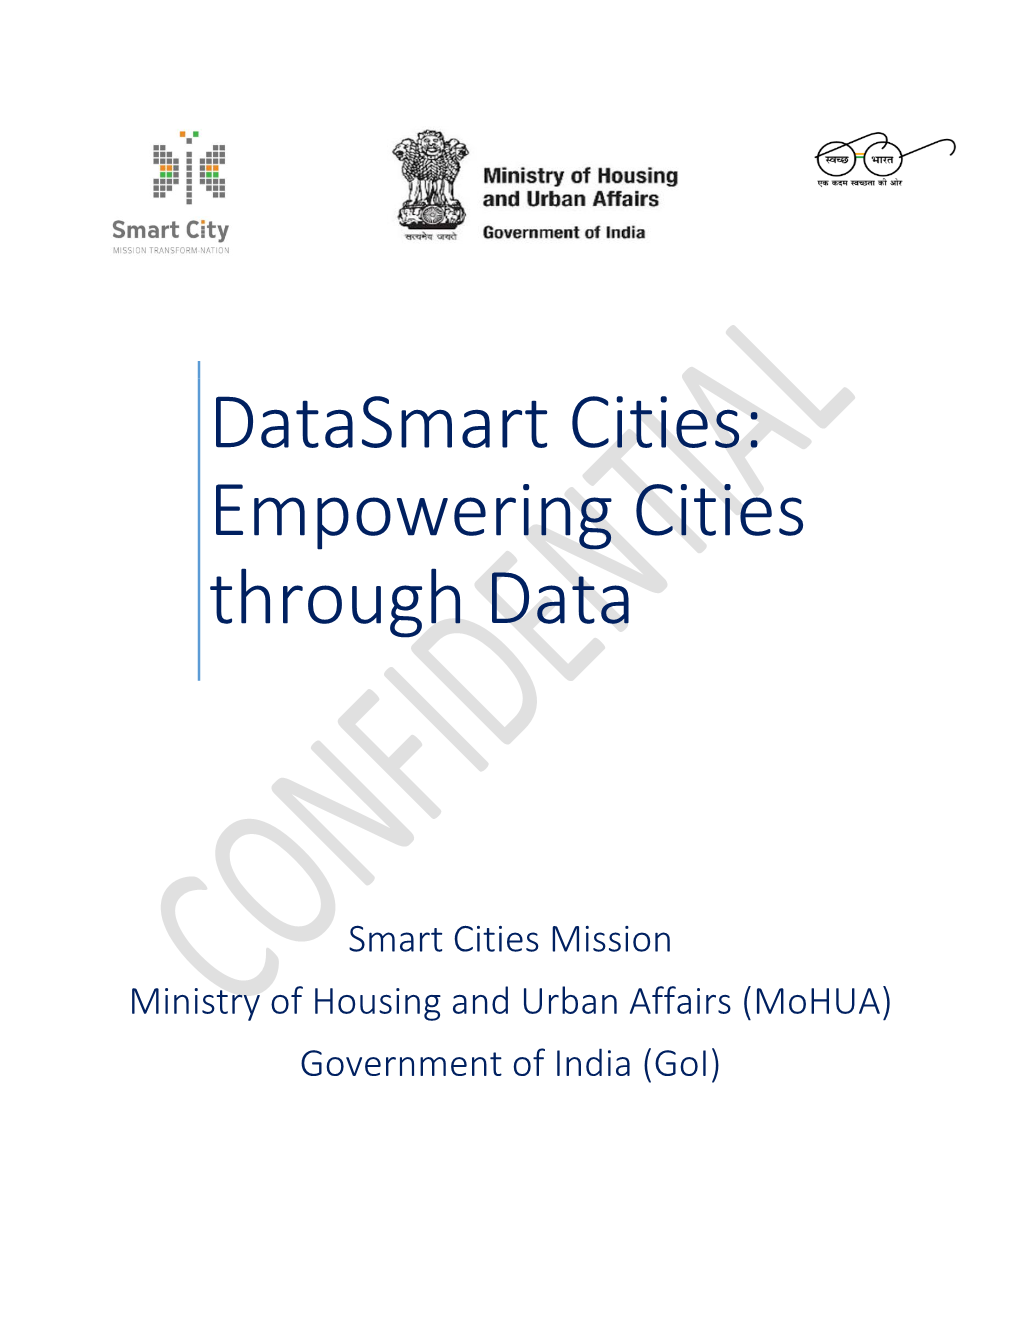 Datasmart Cities: Empowering Cities Through Data